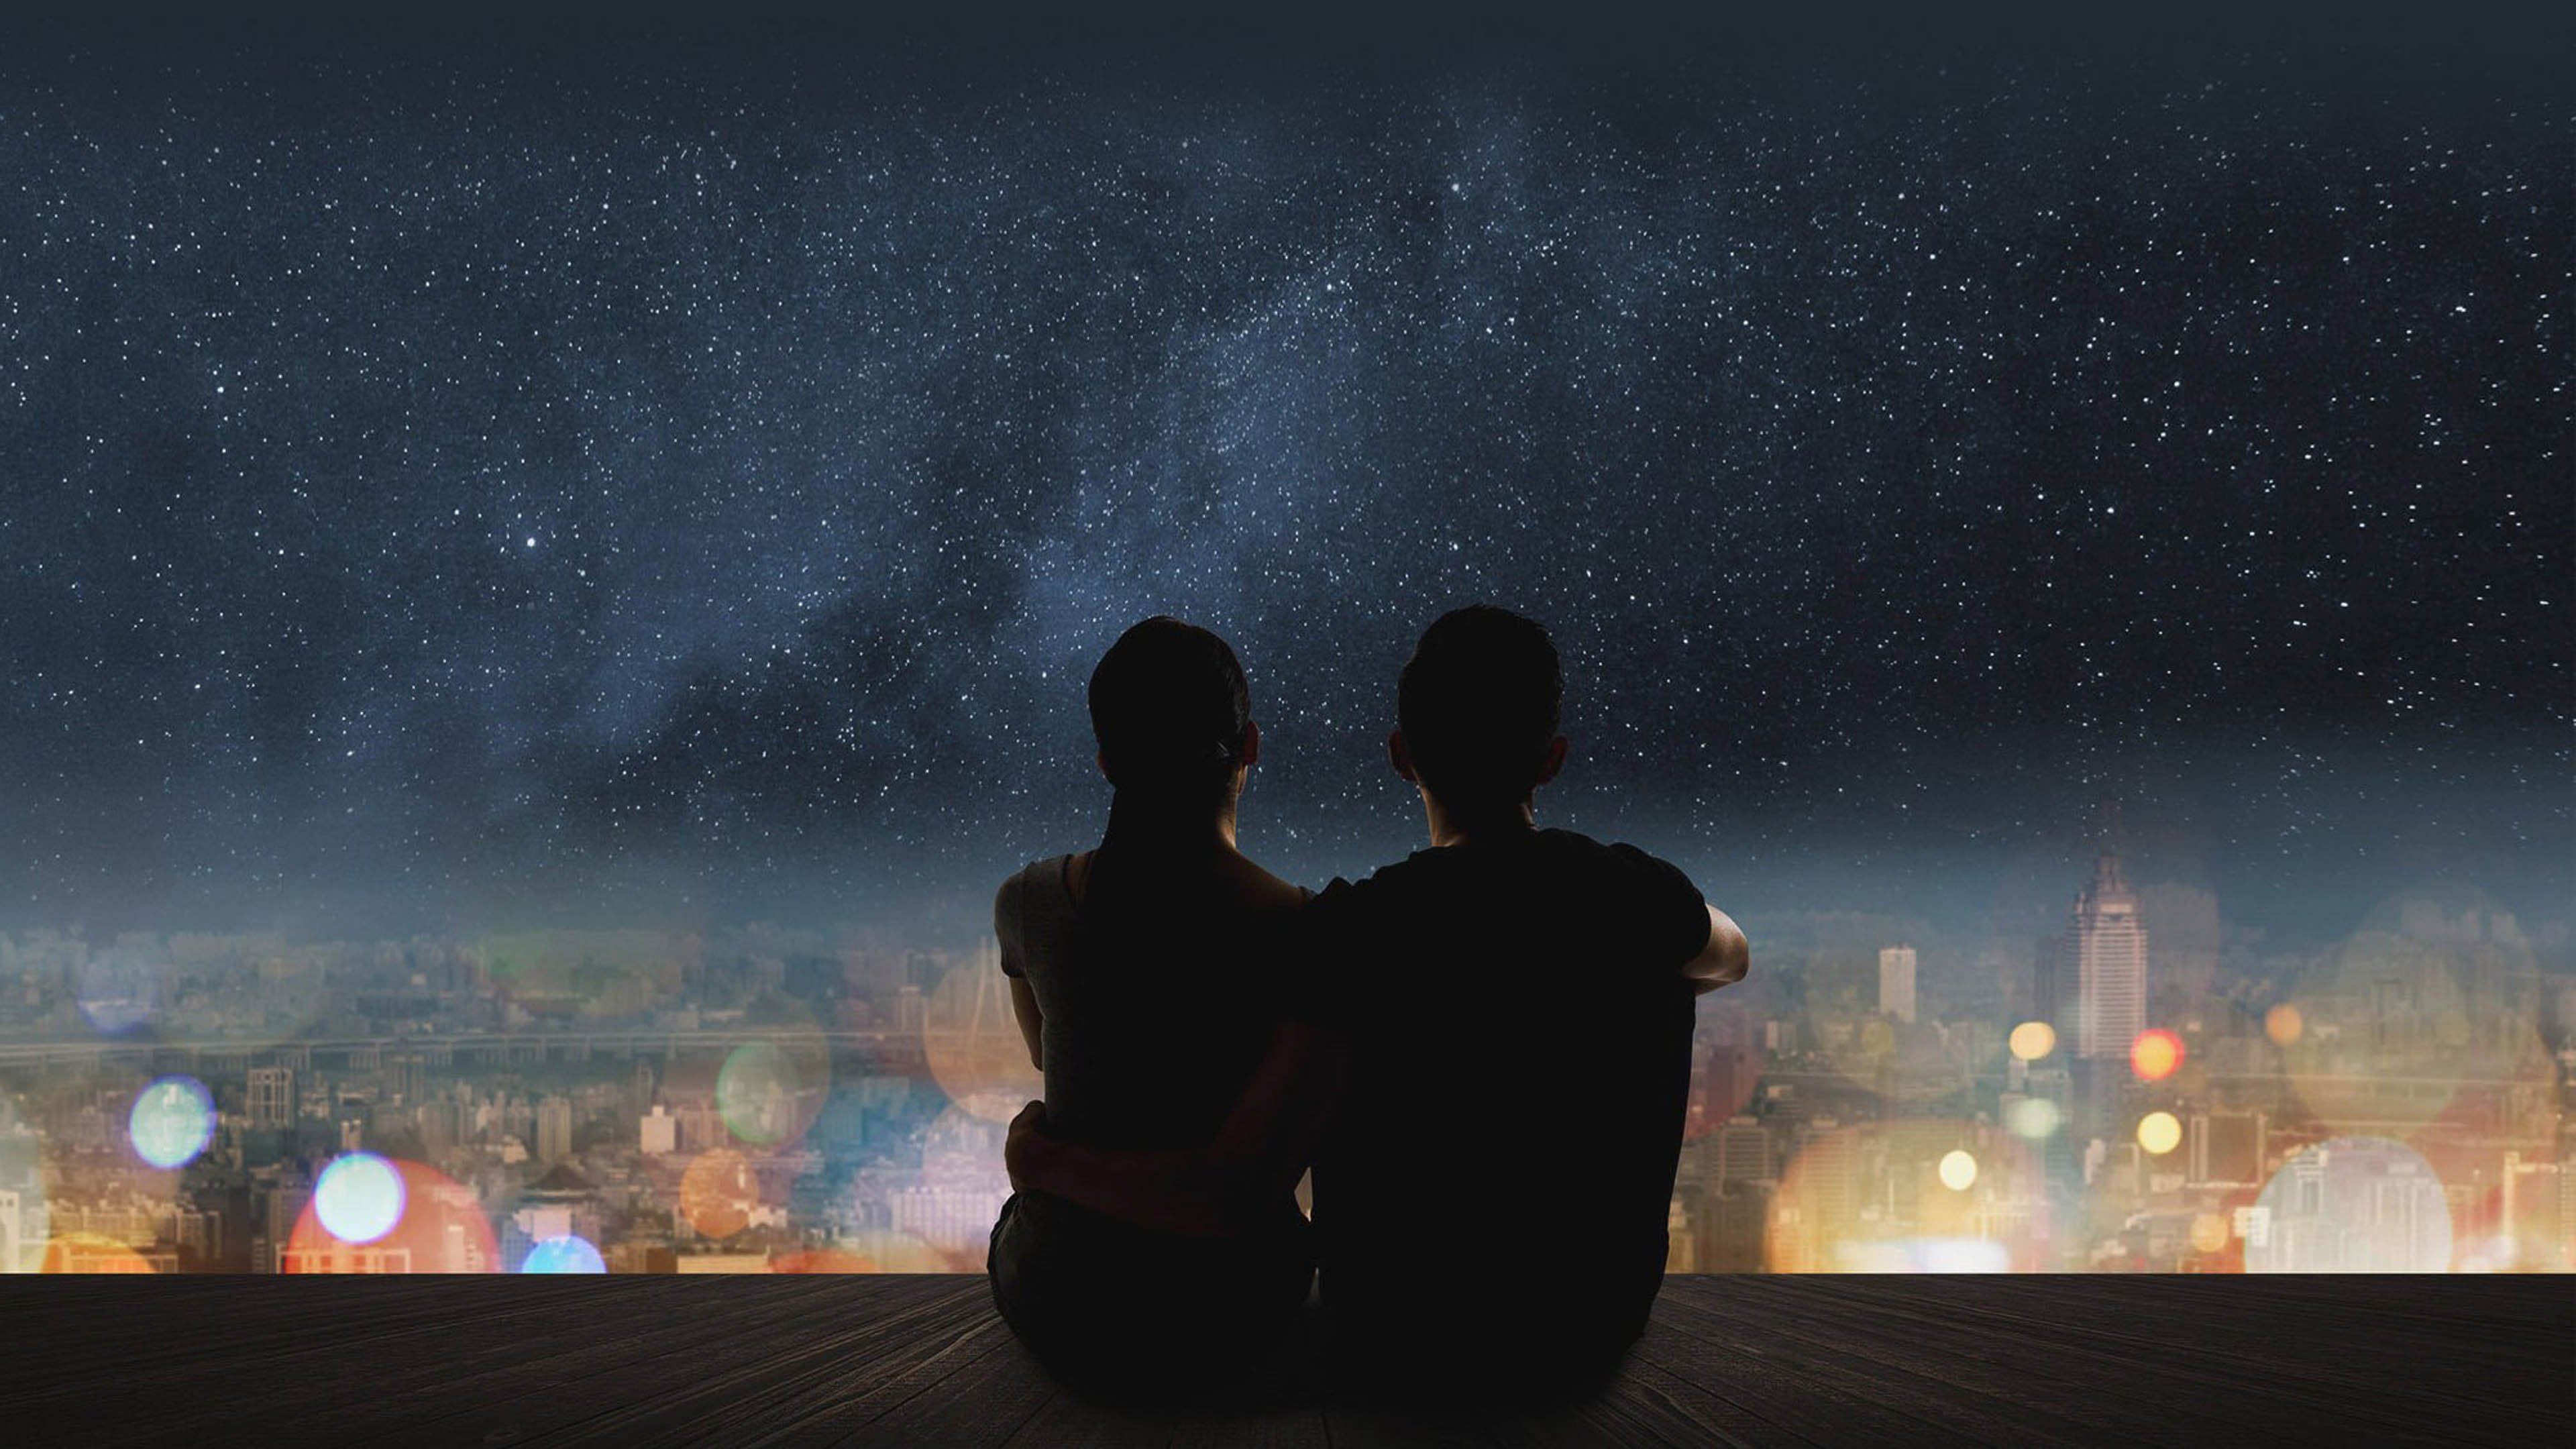 Прощание вечером. Пара на фоне ночного неба. Звездное небо и влюбленные. Пара на фоне ночи. Пара на фоне звездного неба.